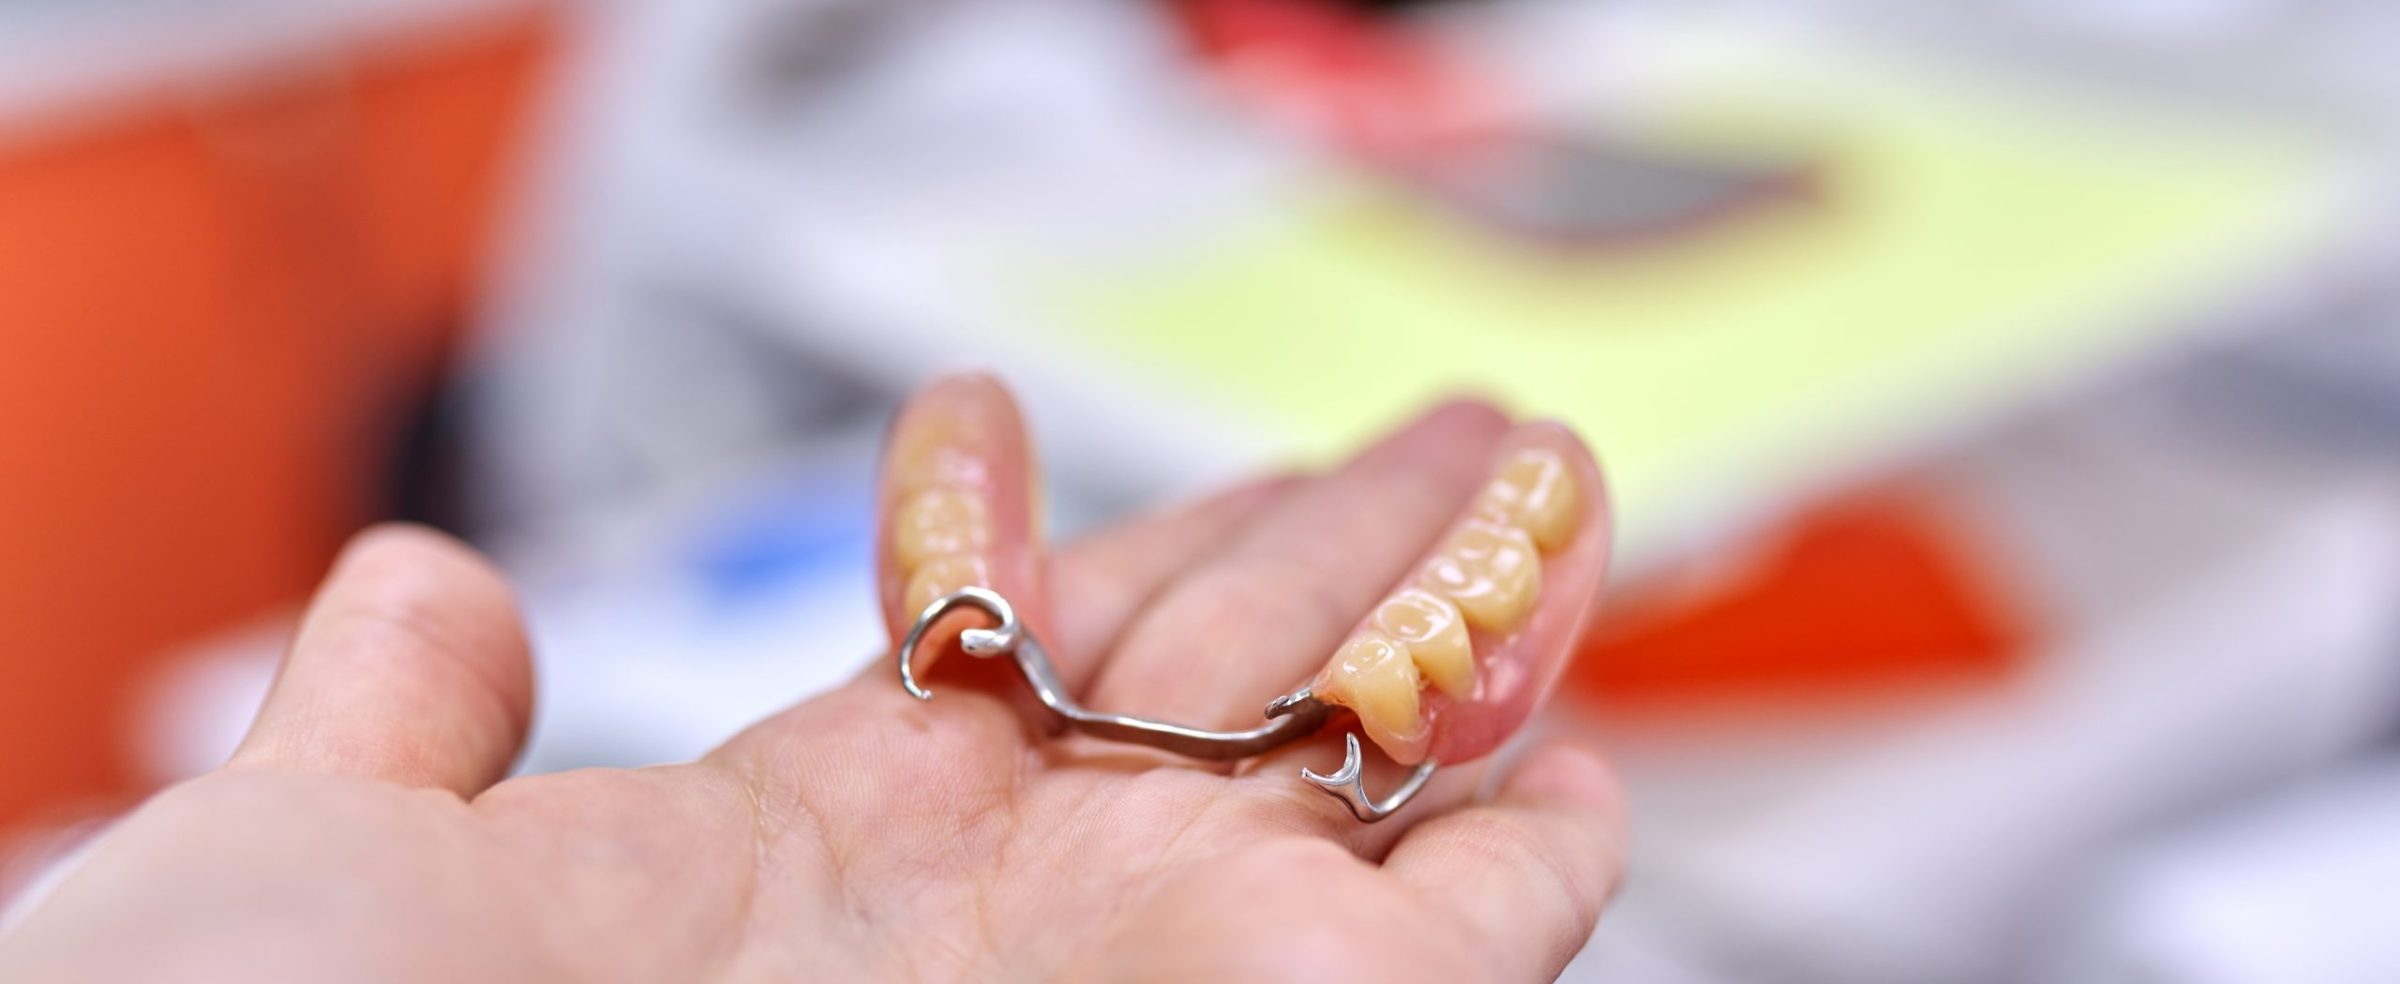 Dental implant model dental bridge in hand, dentist office background, concept of orthopedics, prosthetics, dentistry